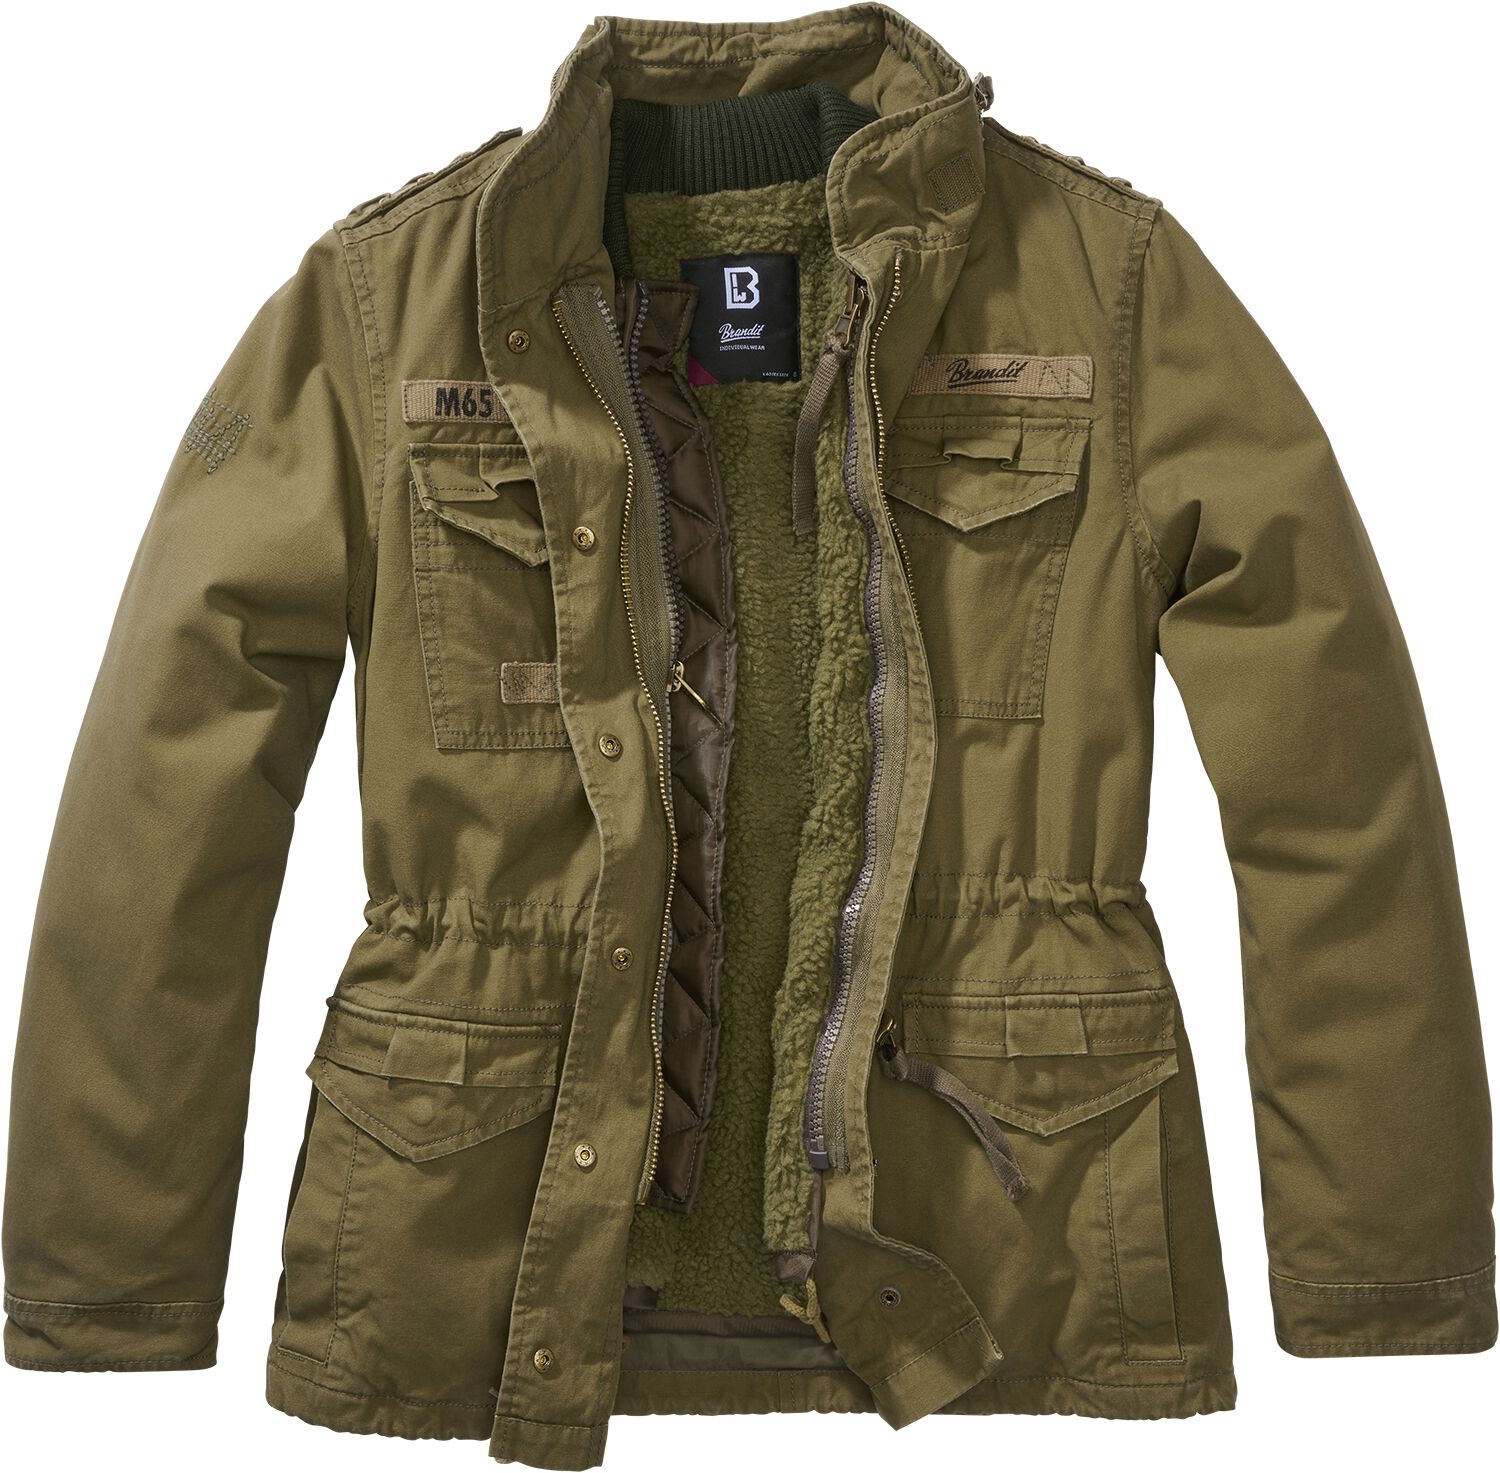 Brandit Winterjacke - Ladies M65 Giant Jacket - XS bis 5XL - für Damen - Größe 4XL - oliv